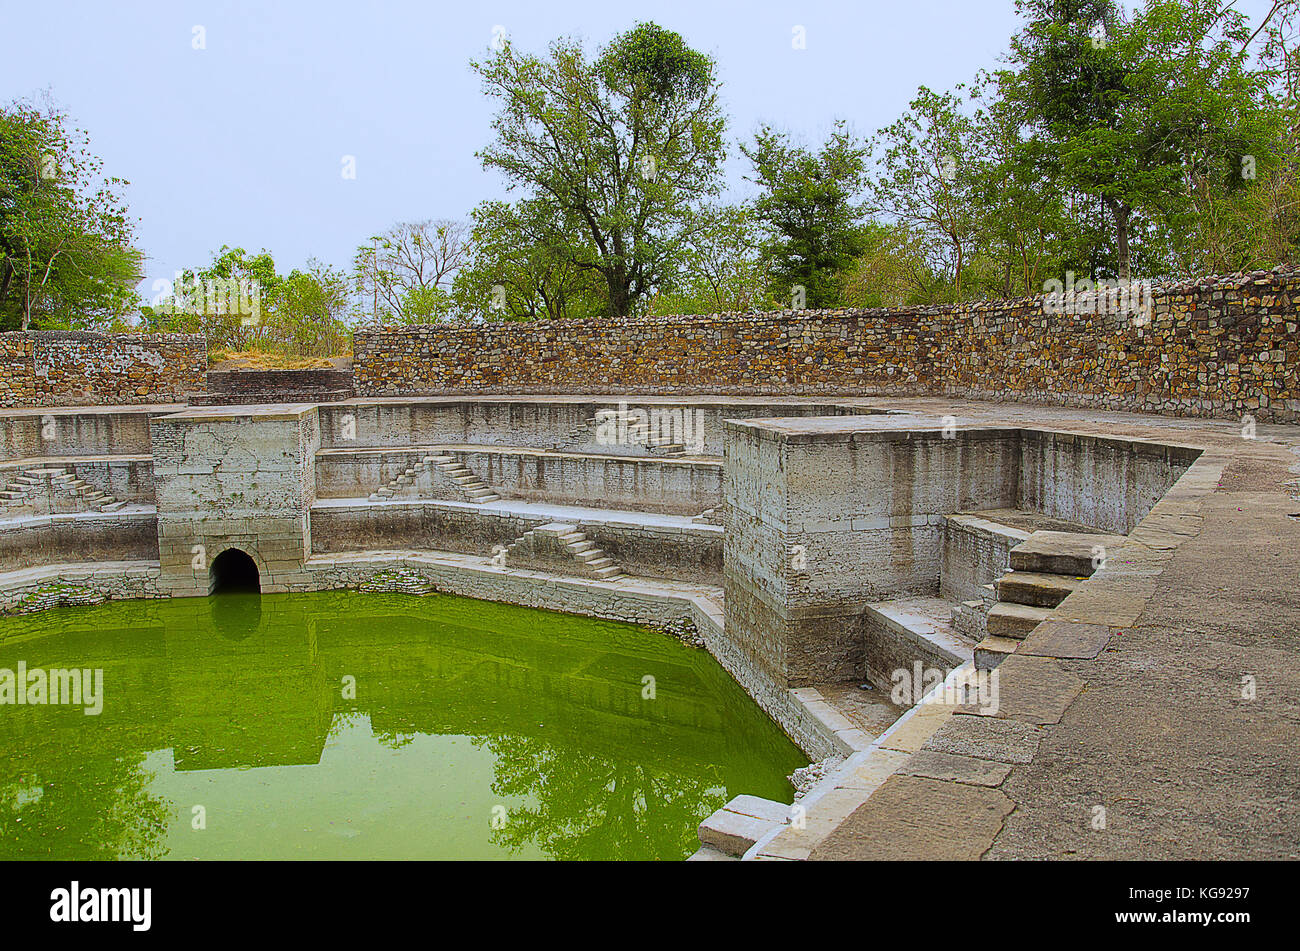 Step Well, befindet sich in Jami Masjid (Moschee), UNESCO-geschützten Champaner - Pavagadh Archäologischen Park, Gujarat, Indien. Daten bis 1513, Bau vorbei Stockfoto